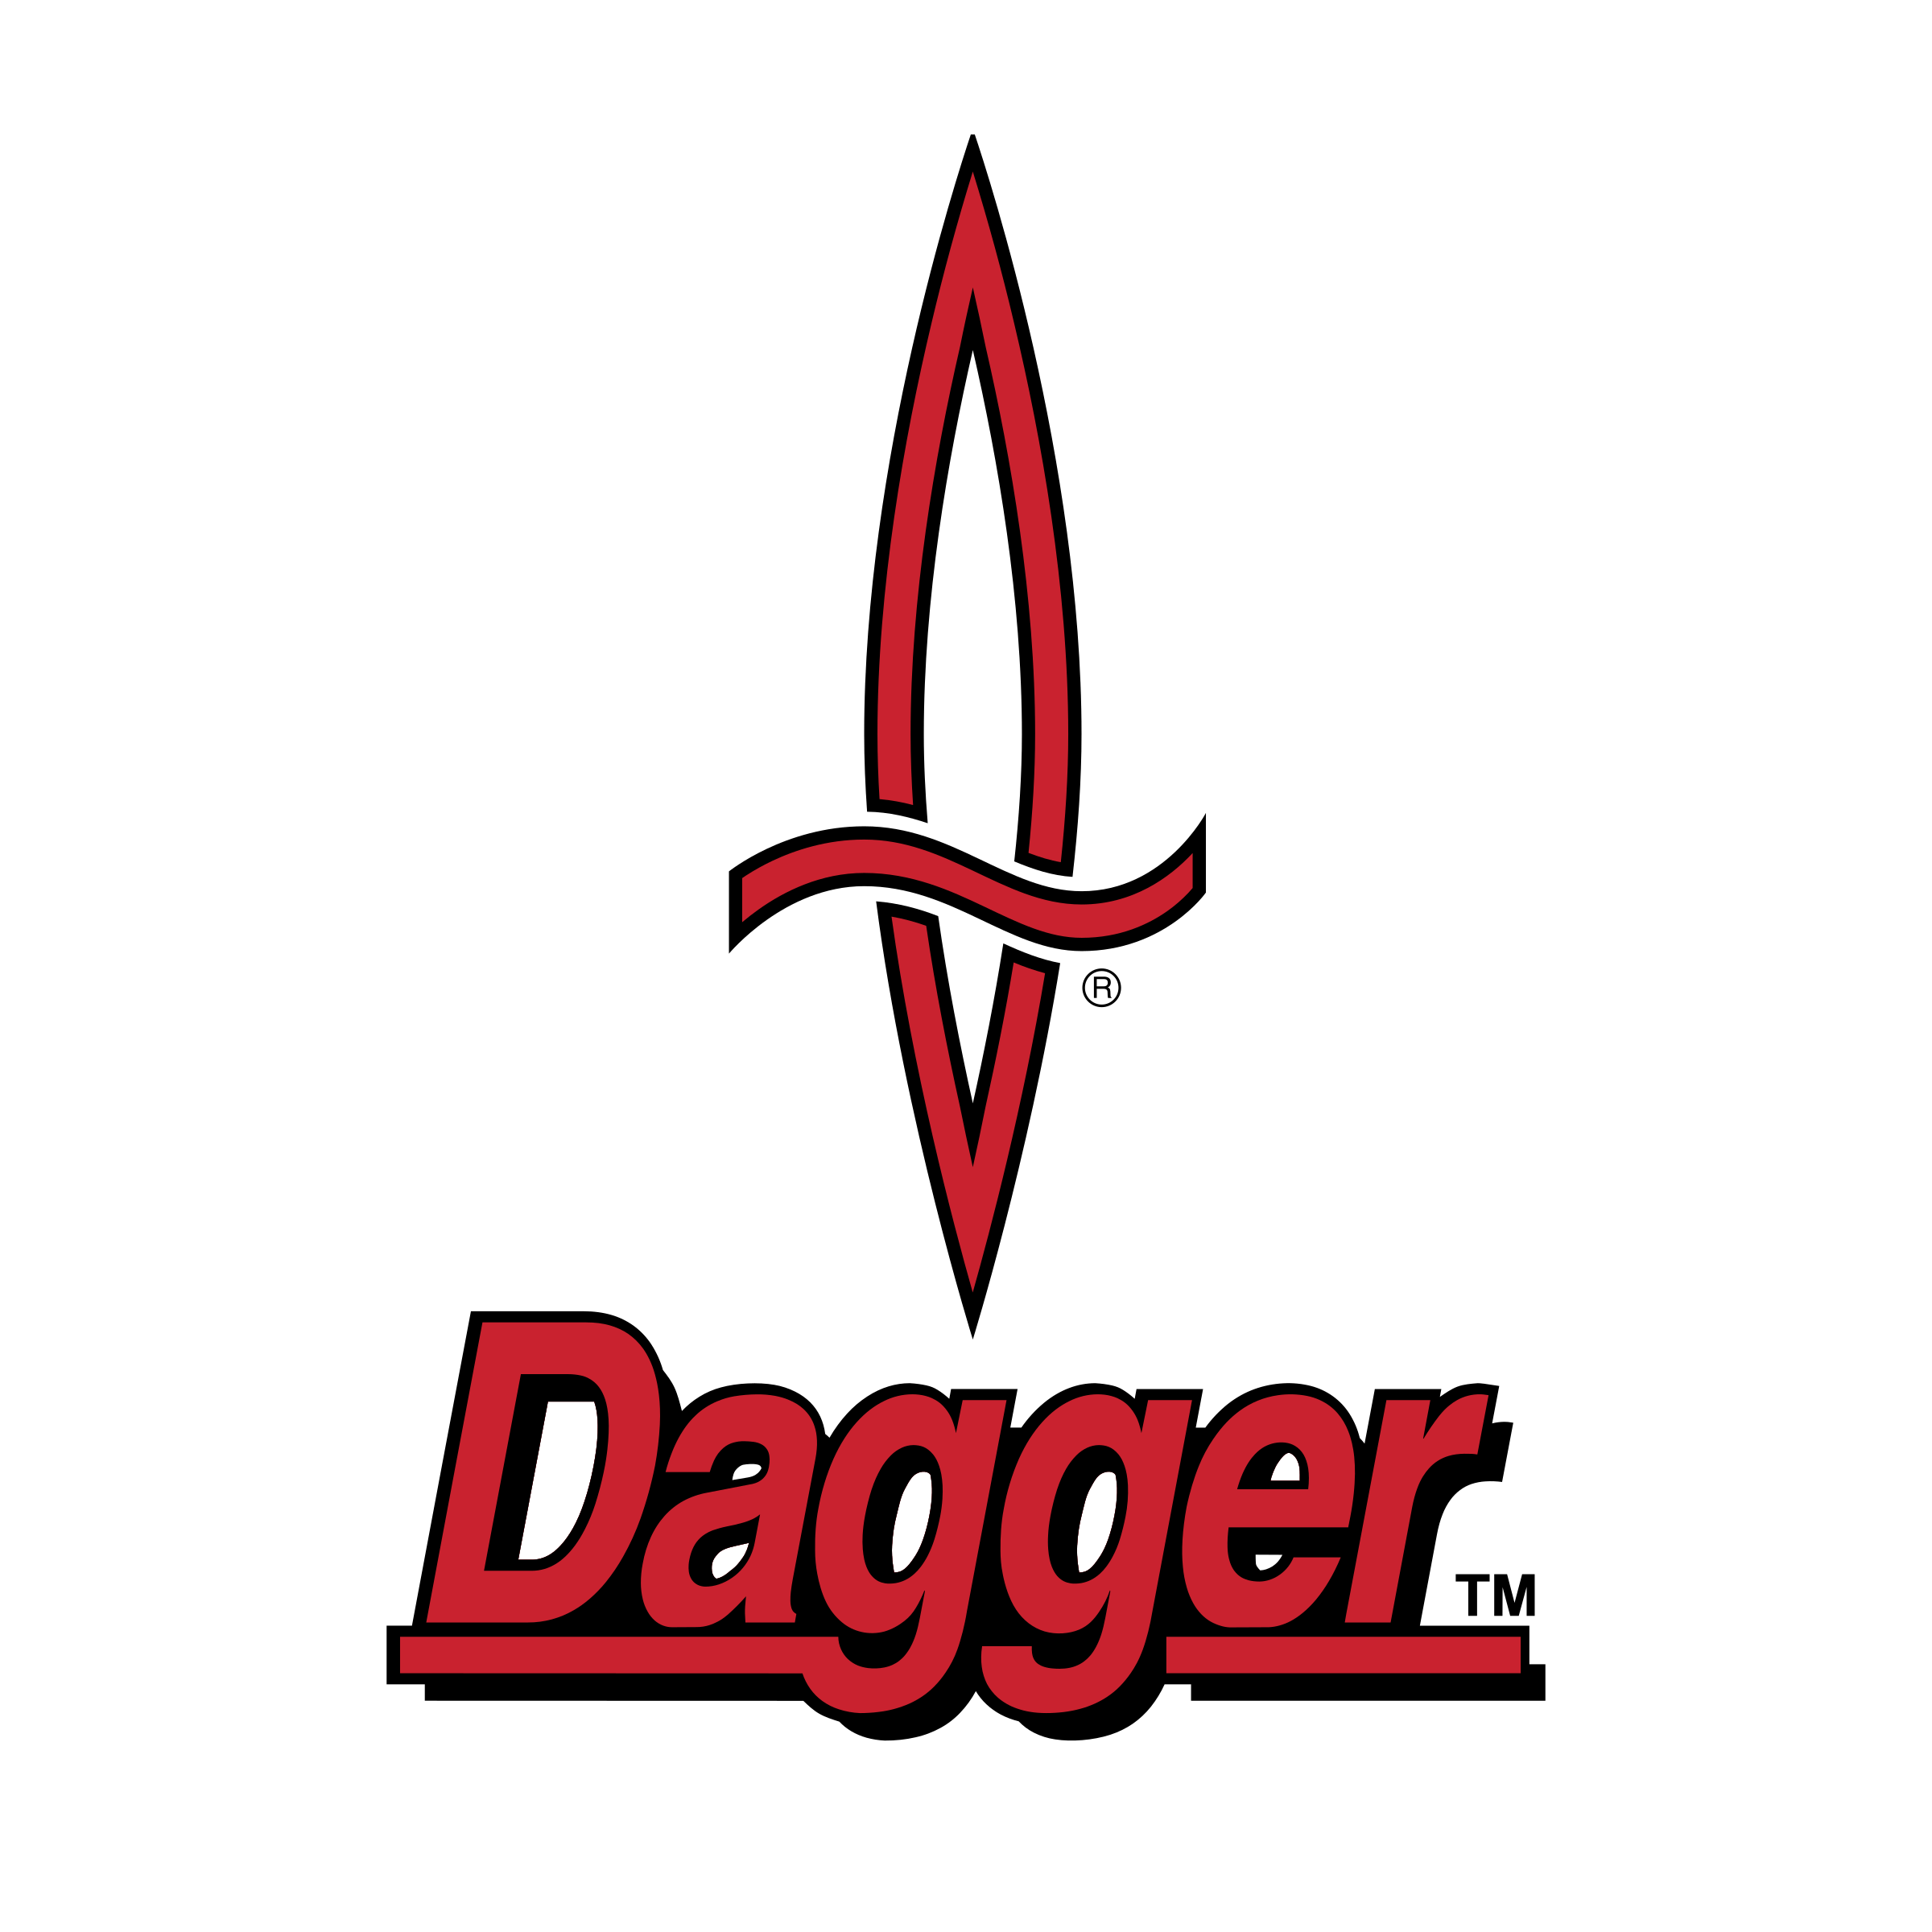 Dagger Logo - Dagger Logo PNG Transparent & SVG Vector